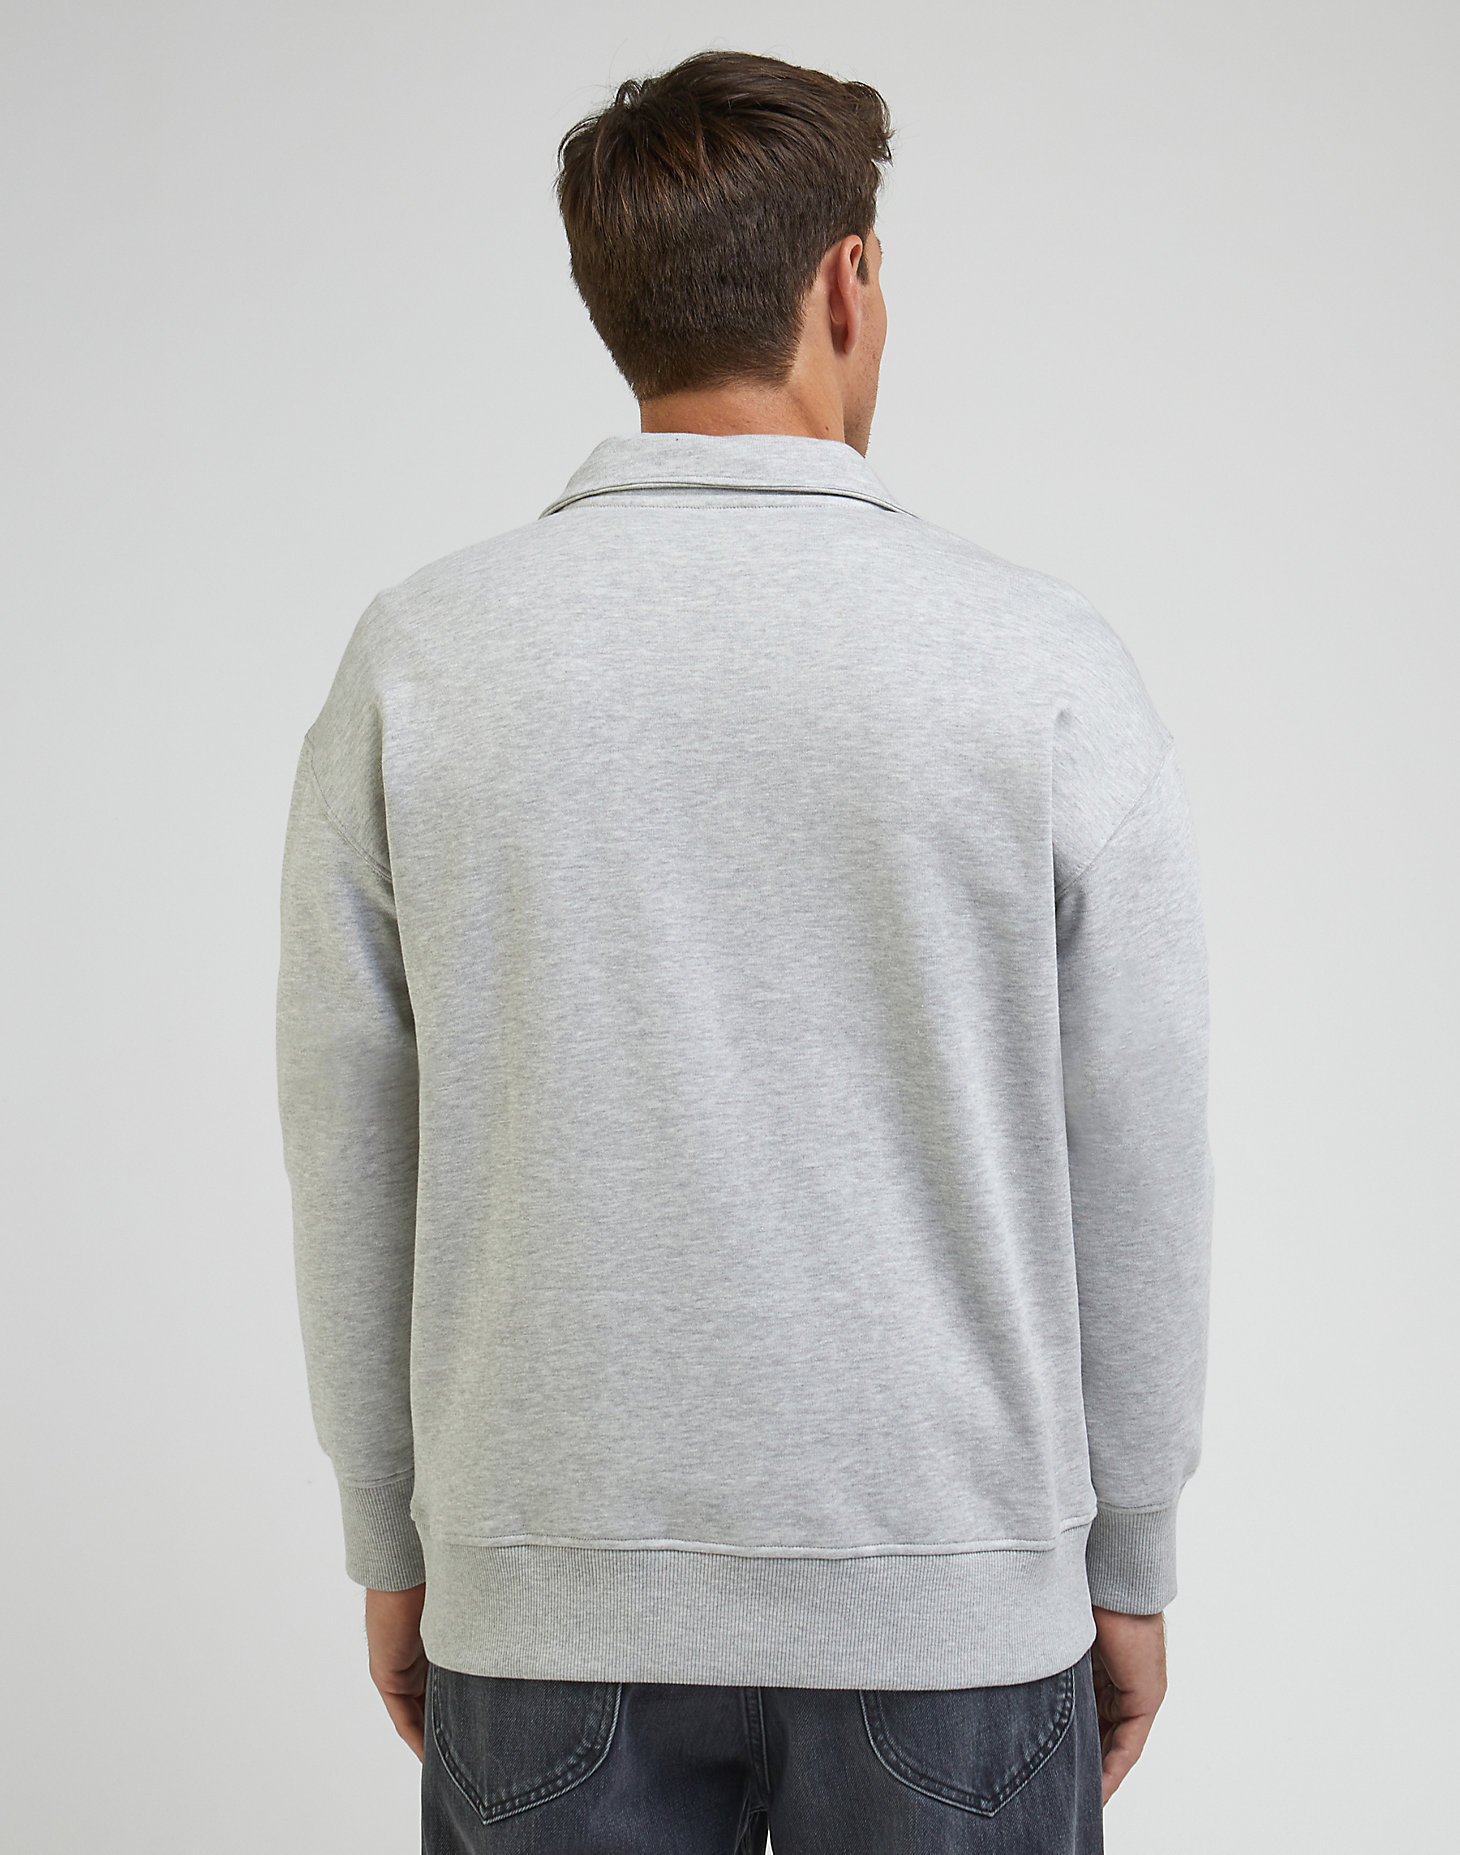 Half Zip Sweatshirt in Sharp Grey Mele alternative view 1